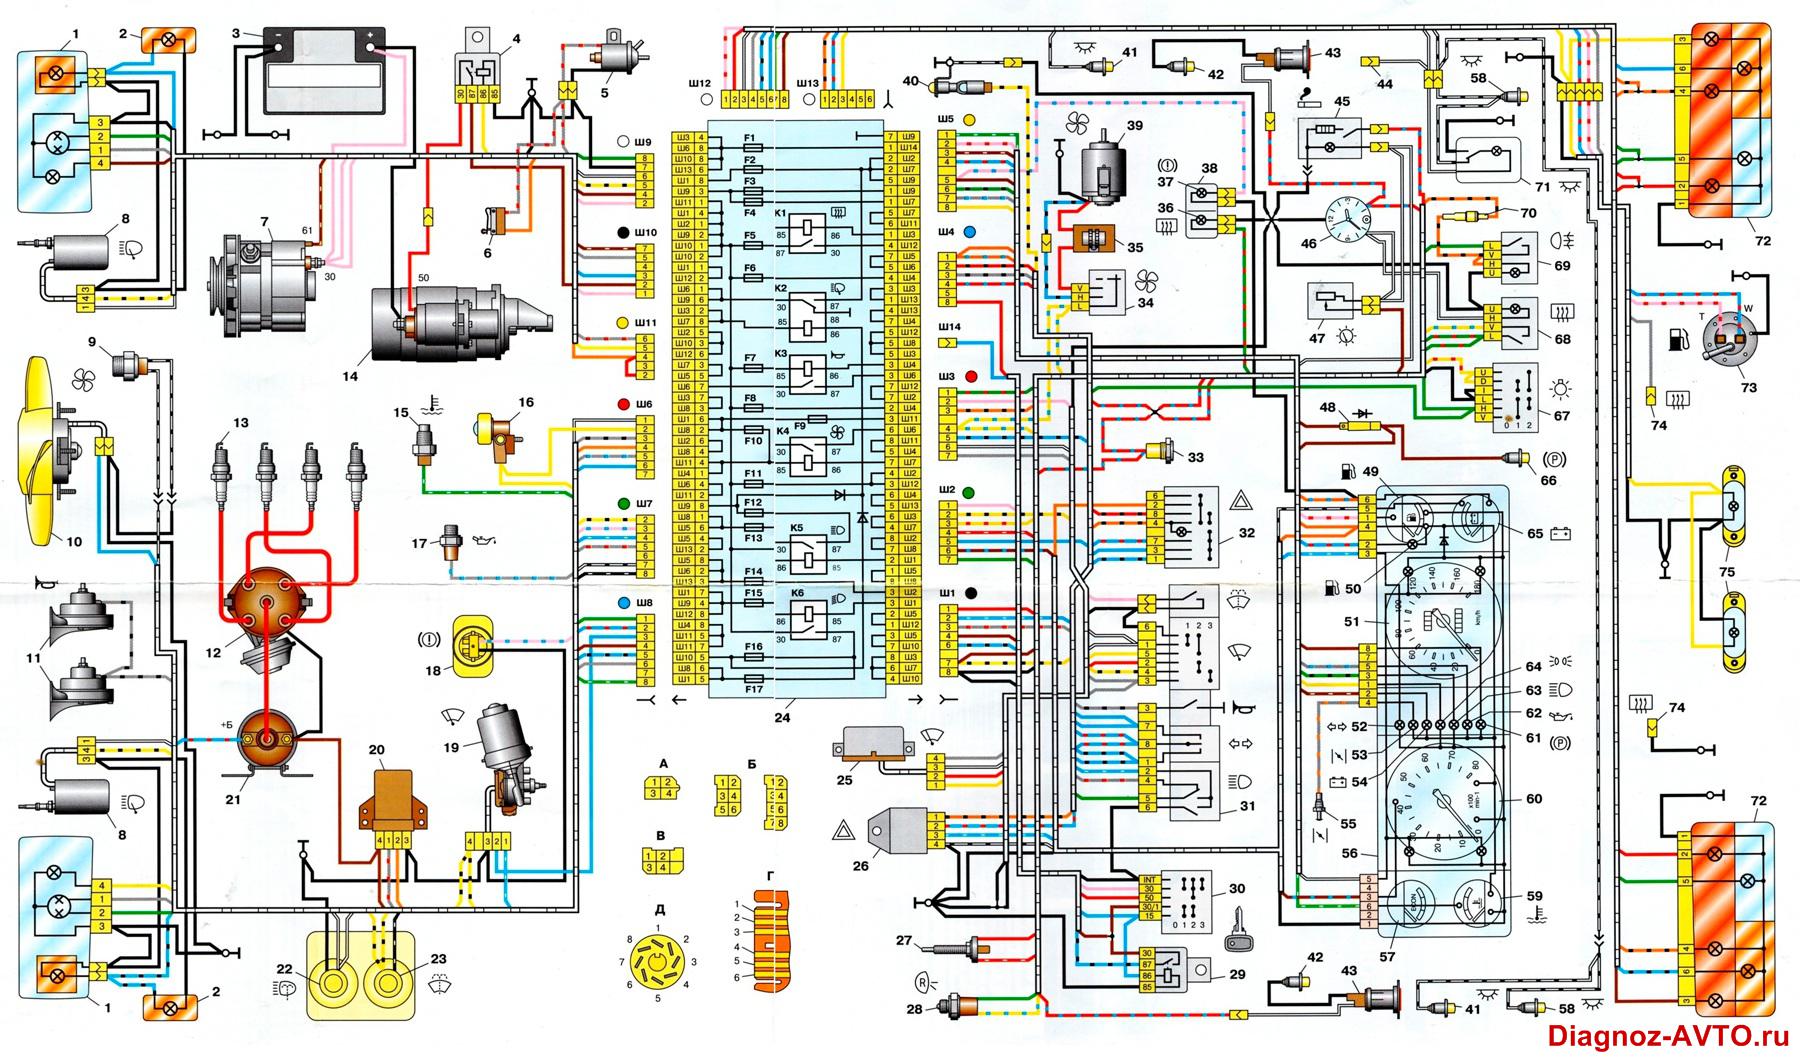 Общая схема электрооборудования ВАЗ-2107